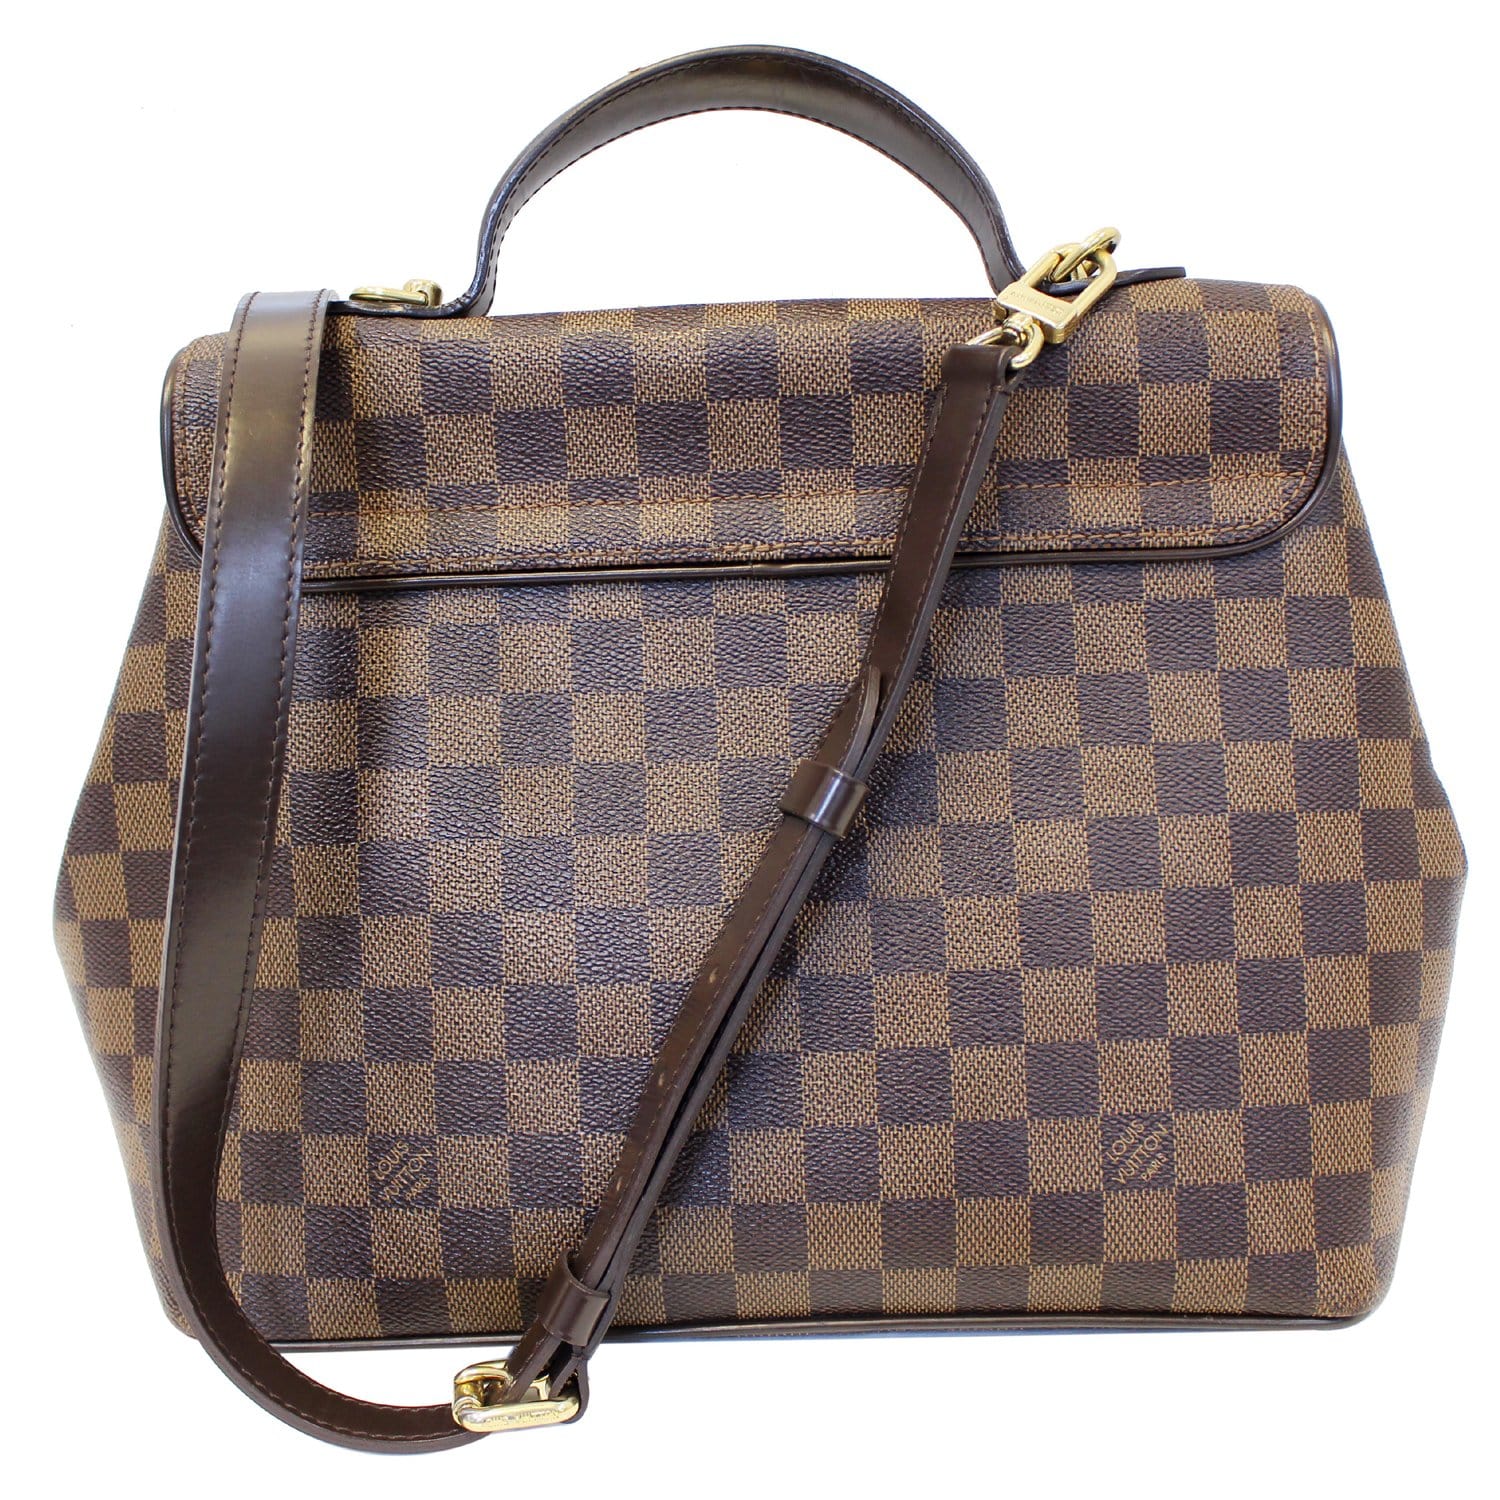 100% Authentic Louis Vuitton Bergamo MM Damier bag - Depop